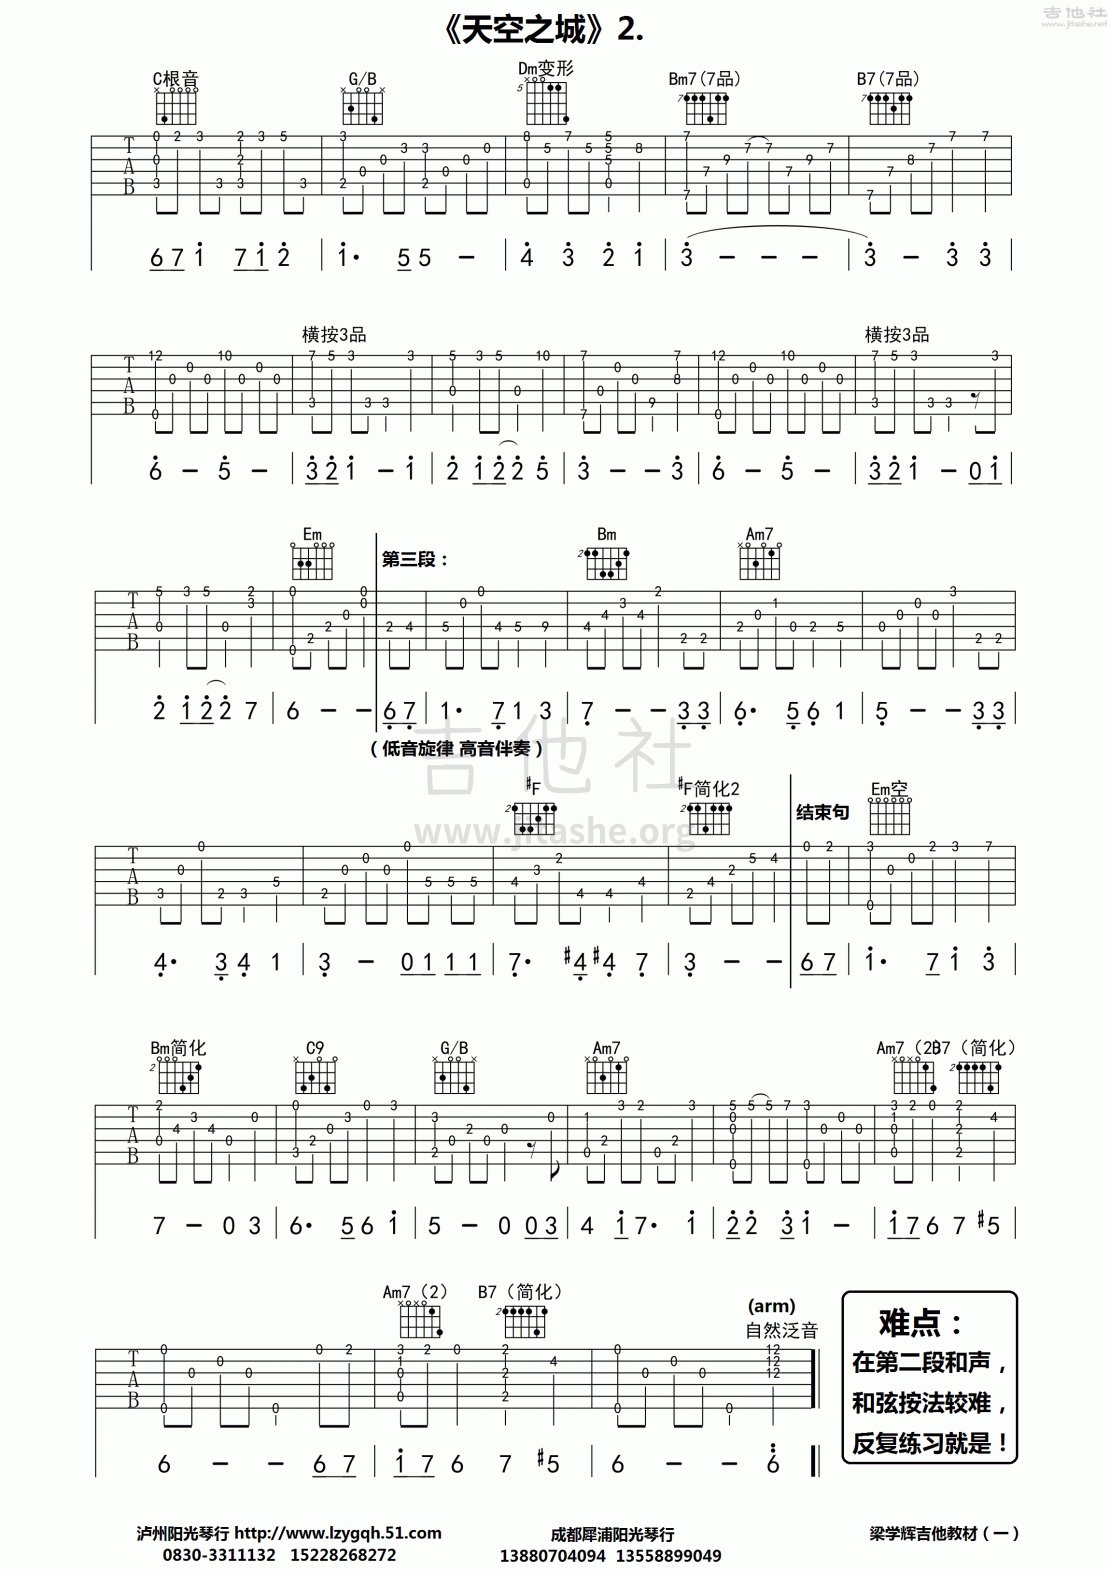 打印:天空之城吉他谱_动漫游戏(ACG)_天空之城 木吉他版_2.gif